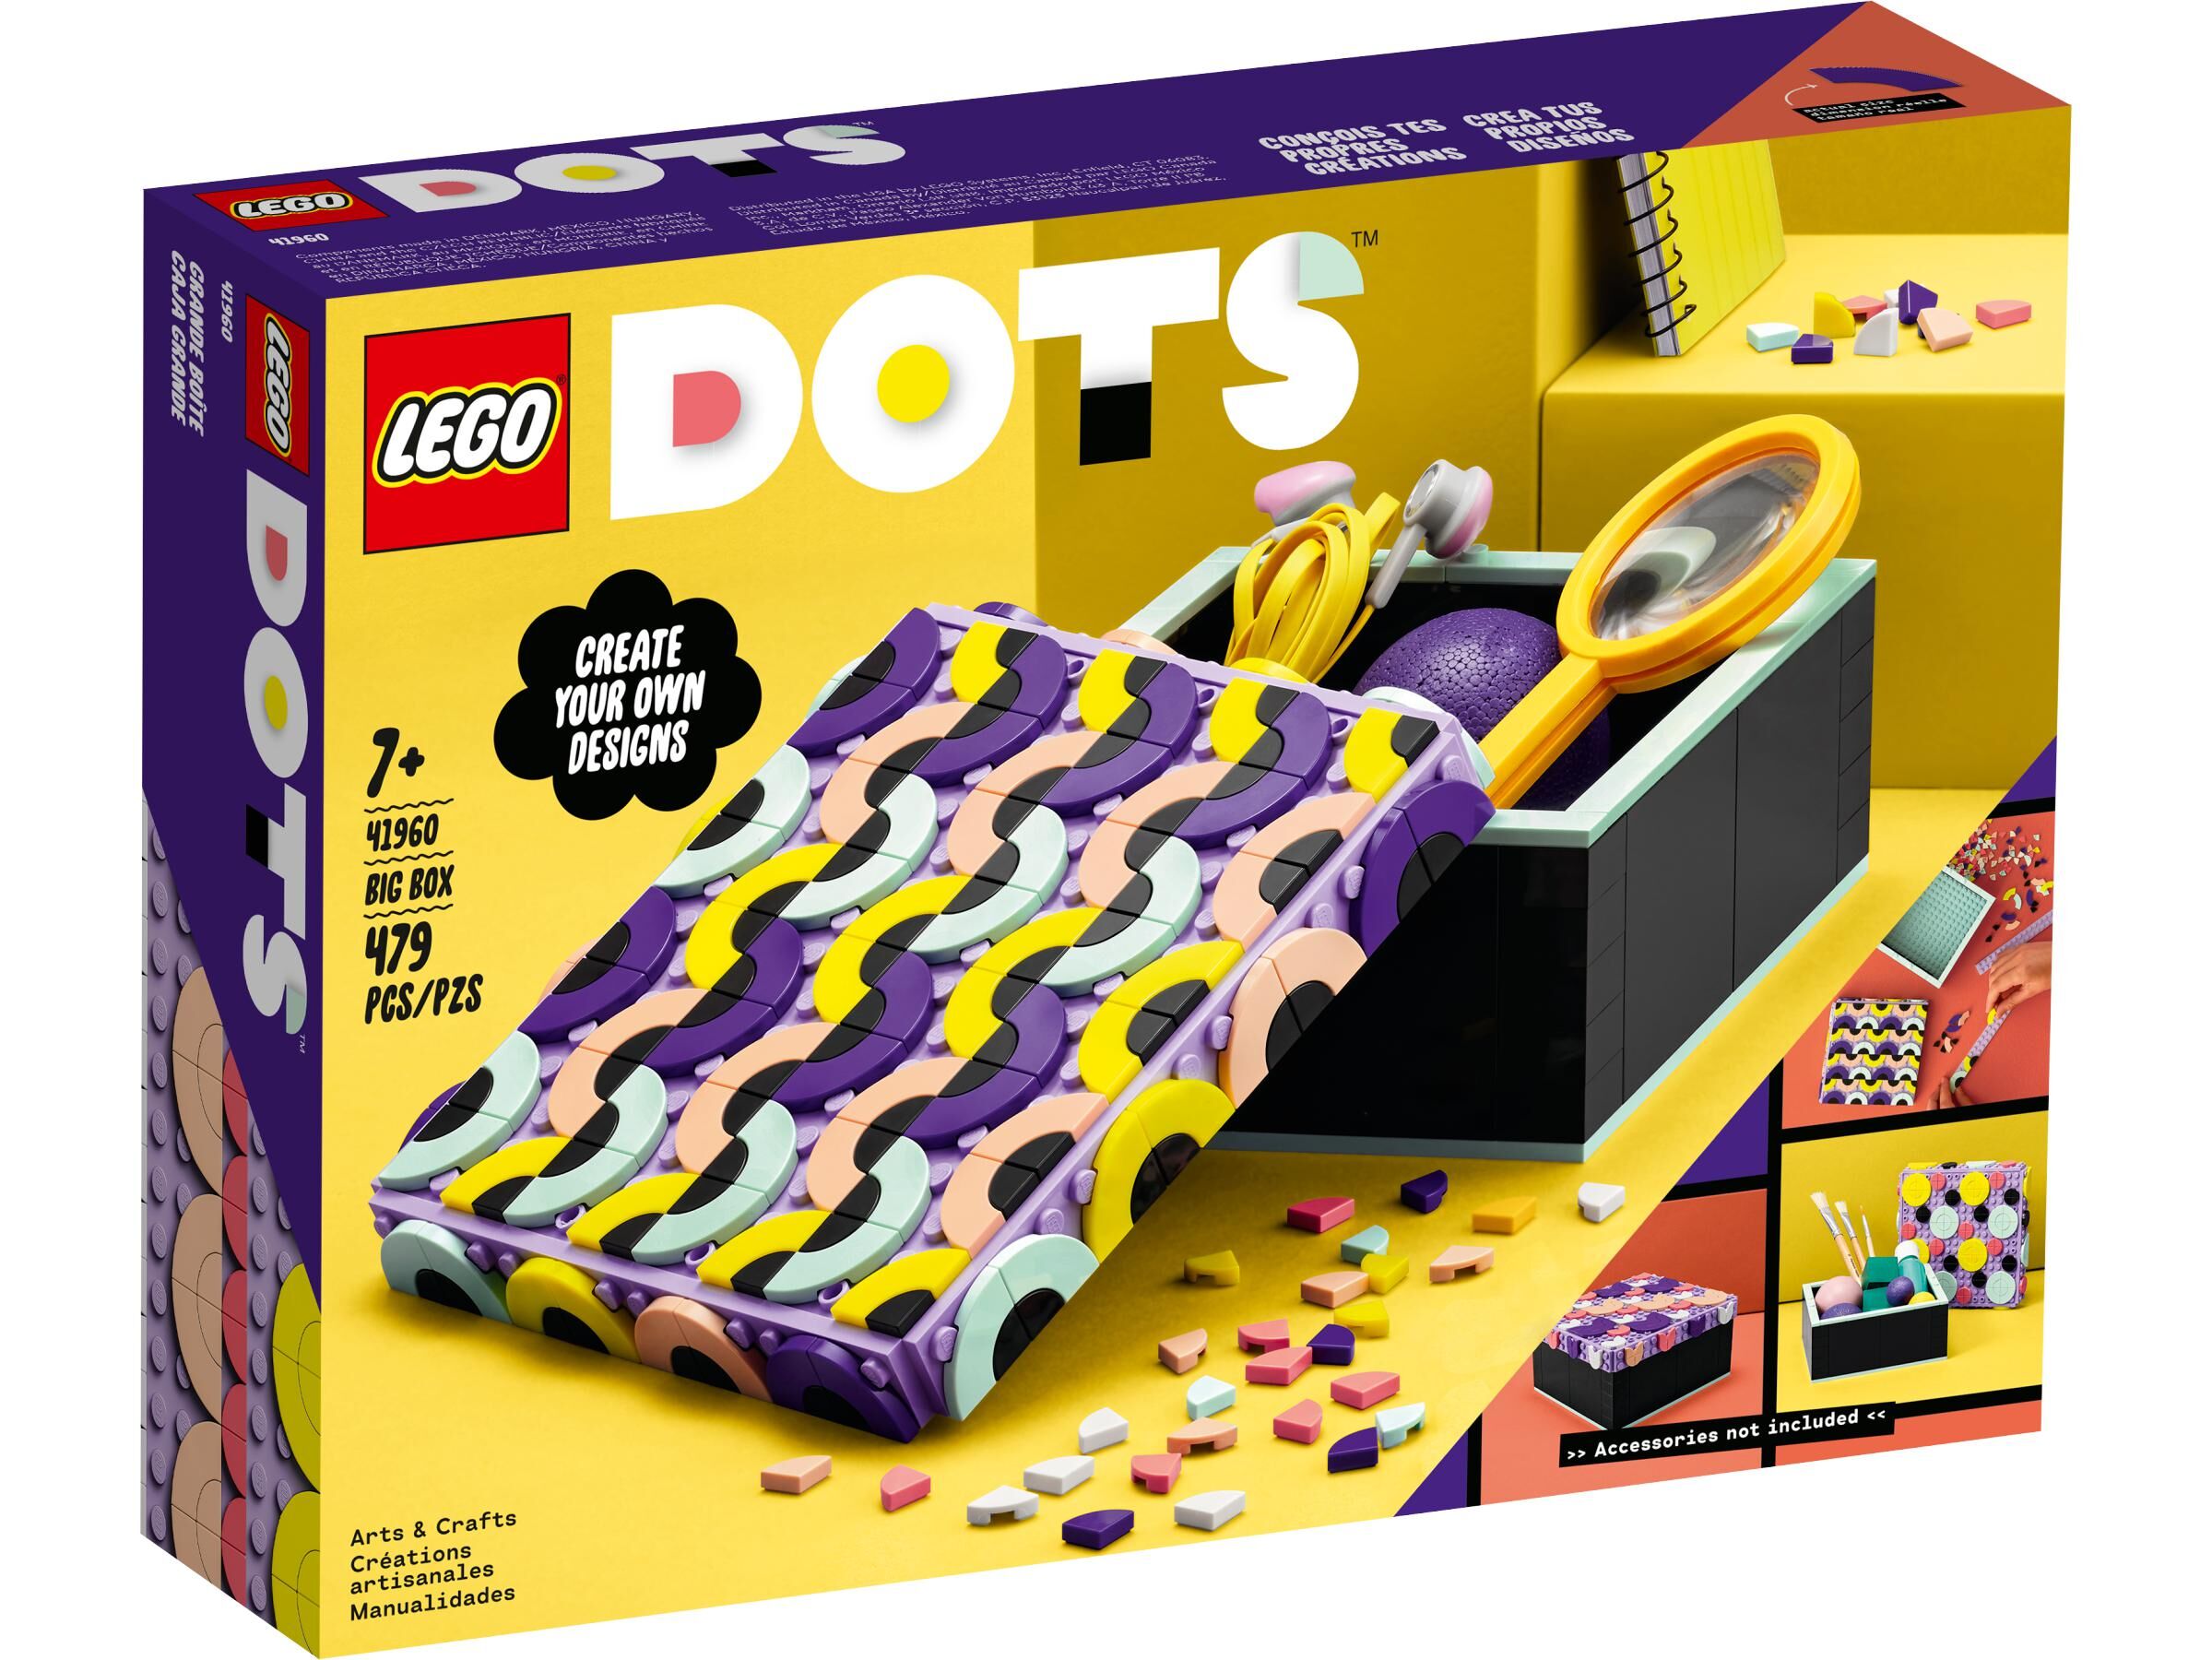 LEGO DOTS 41935 DOTS MEGA PACK DOTS